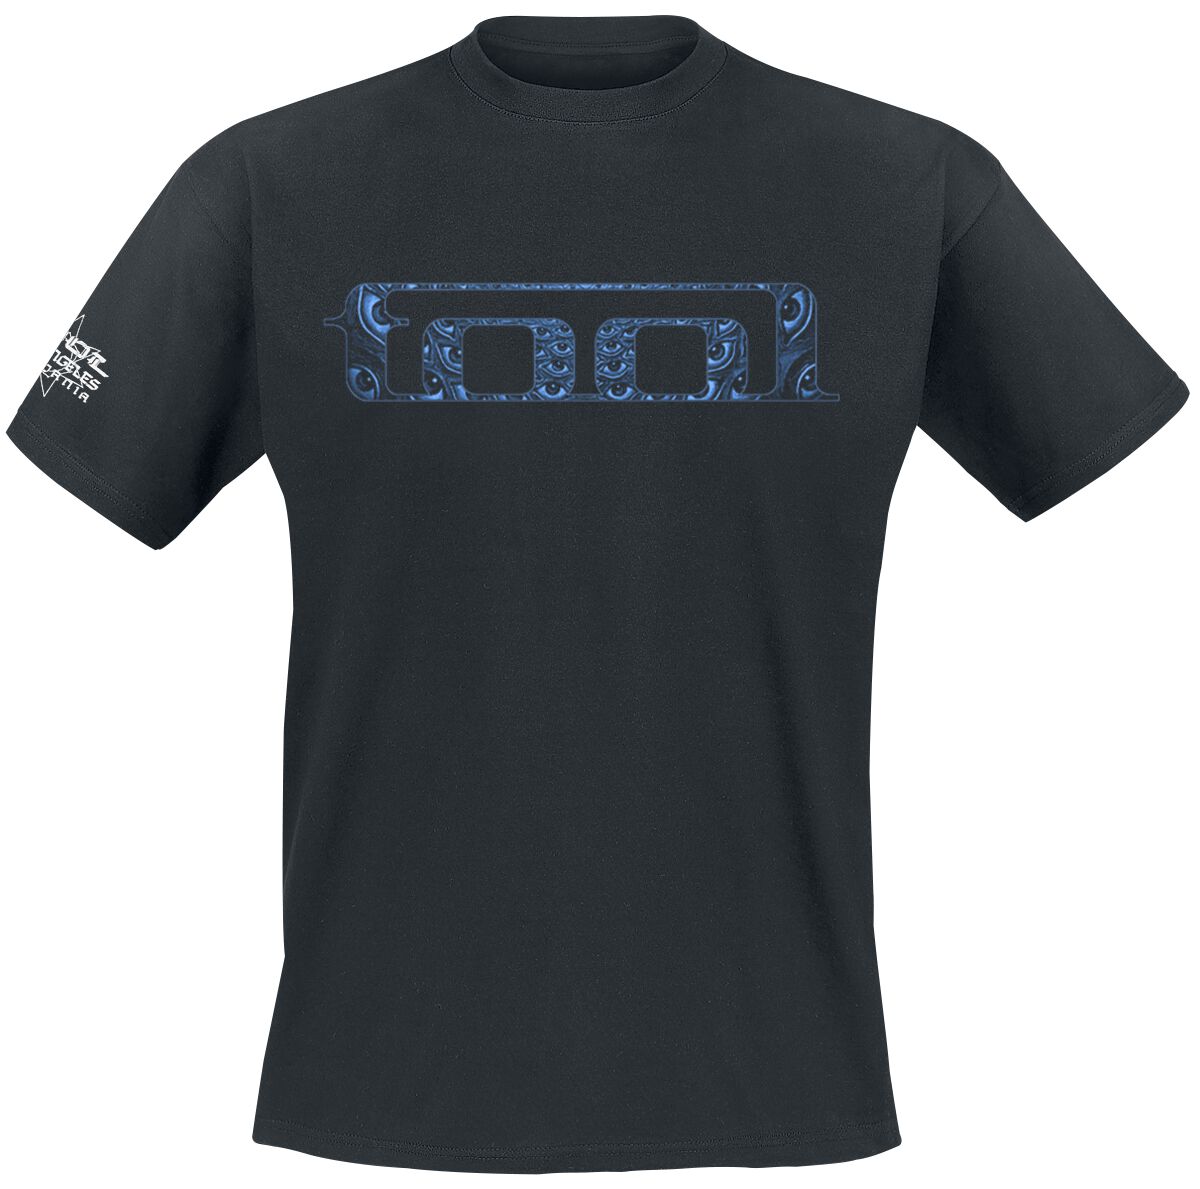 Tool T-Shirt - Blue Spectre - S bis XXL - für Männer - Größe M - schwarz  - Lizenziertes Merchandise!